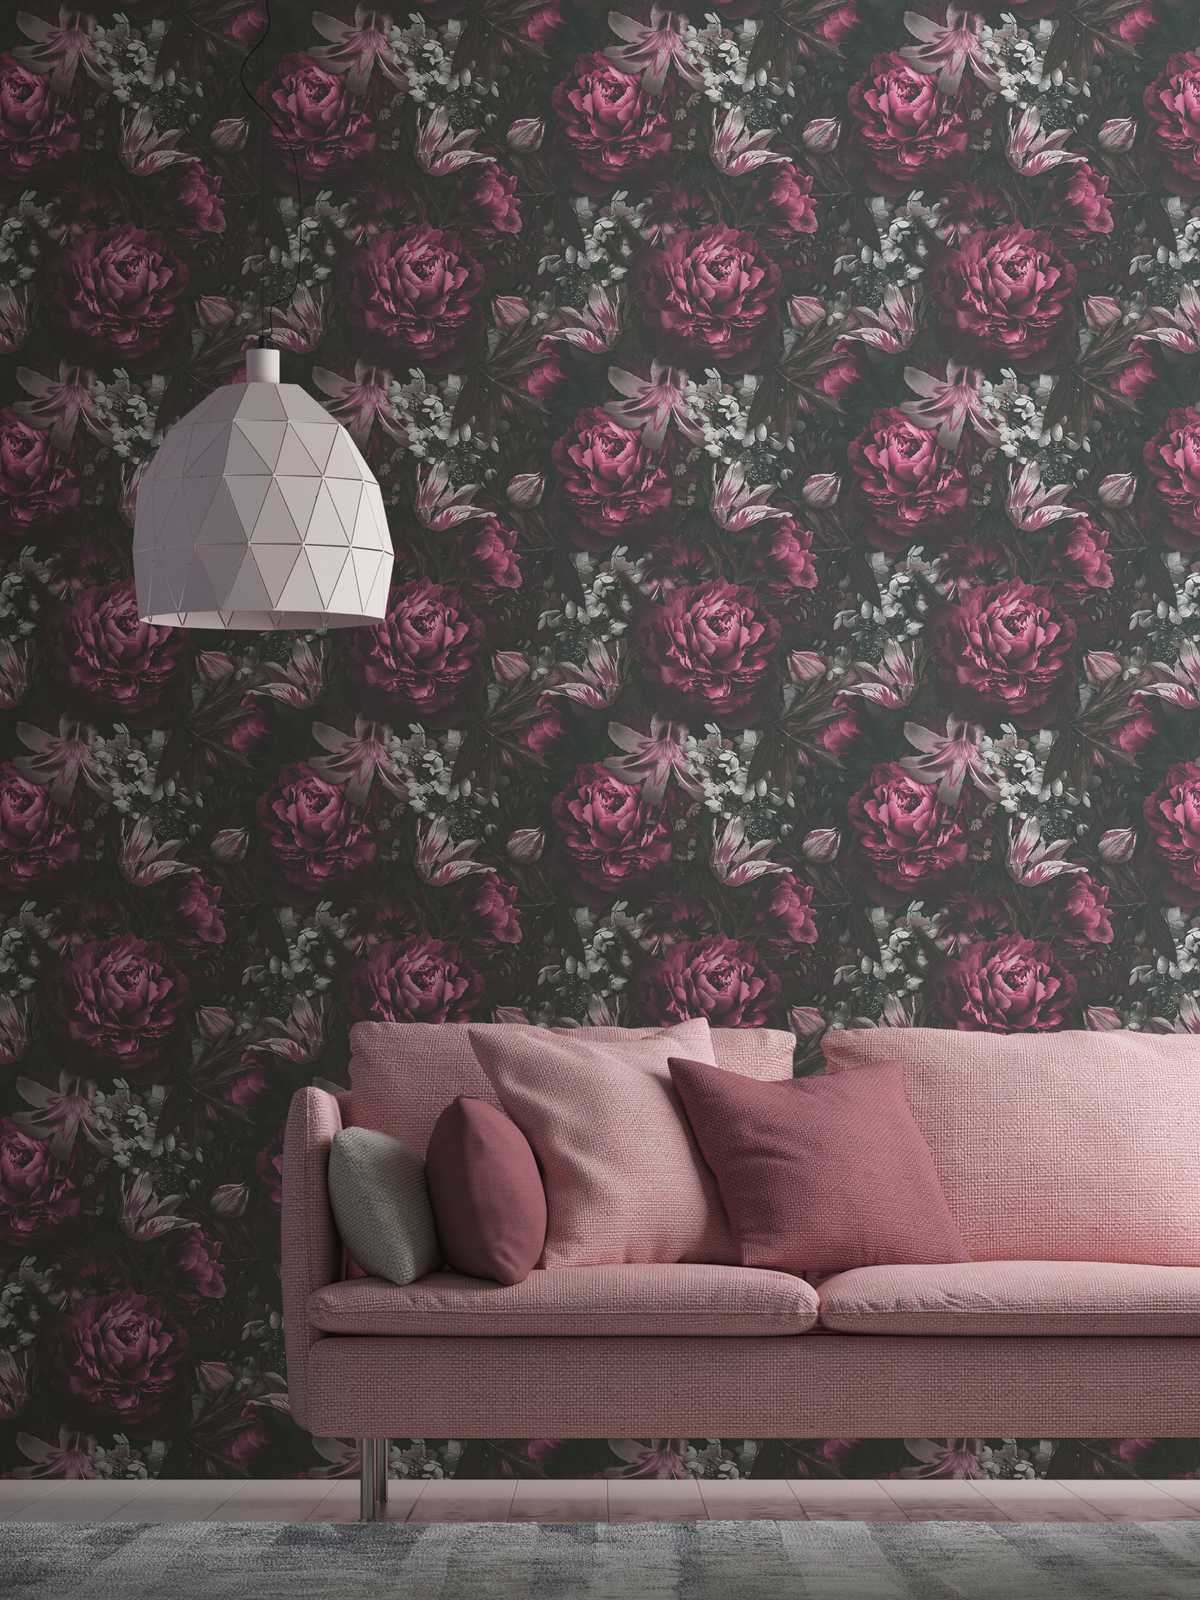             behang rozen & tulpen in klassieke stijl - roze, grijs
        